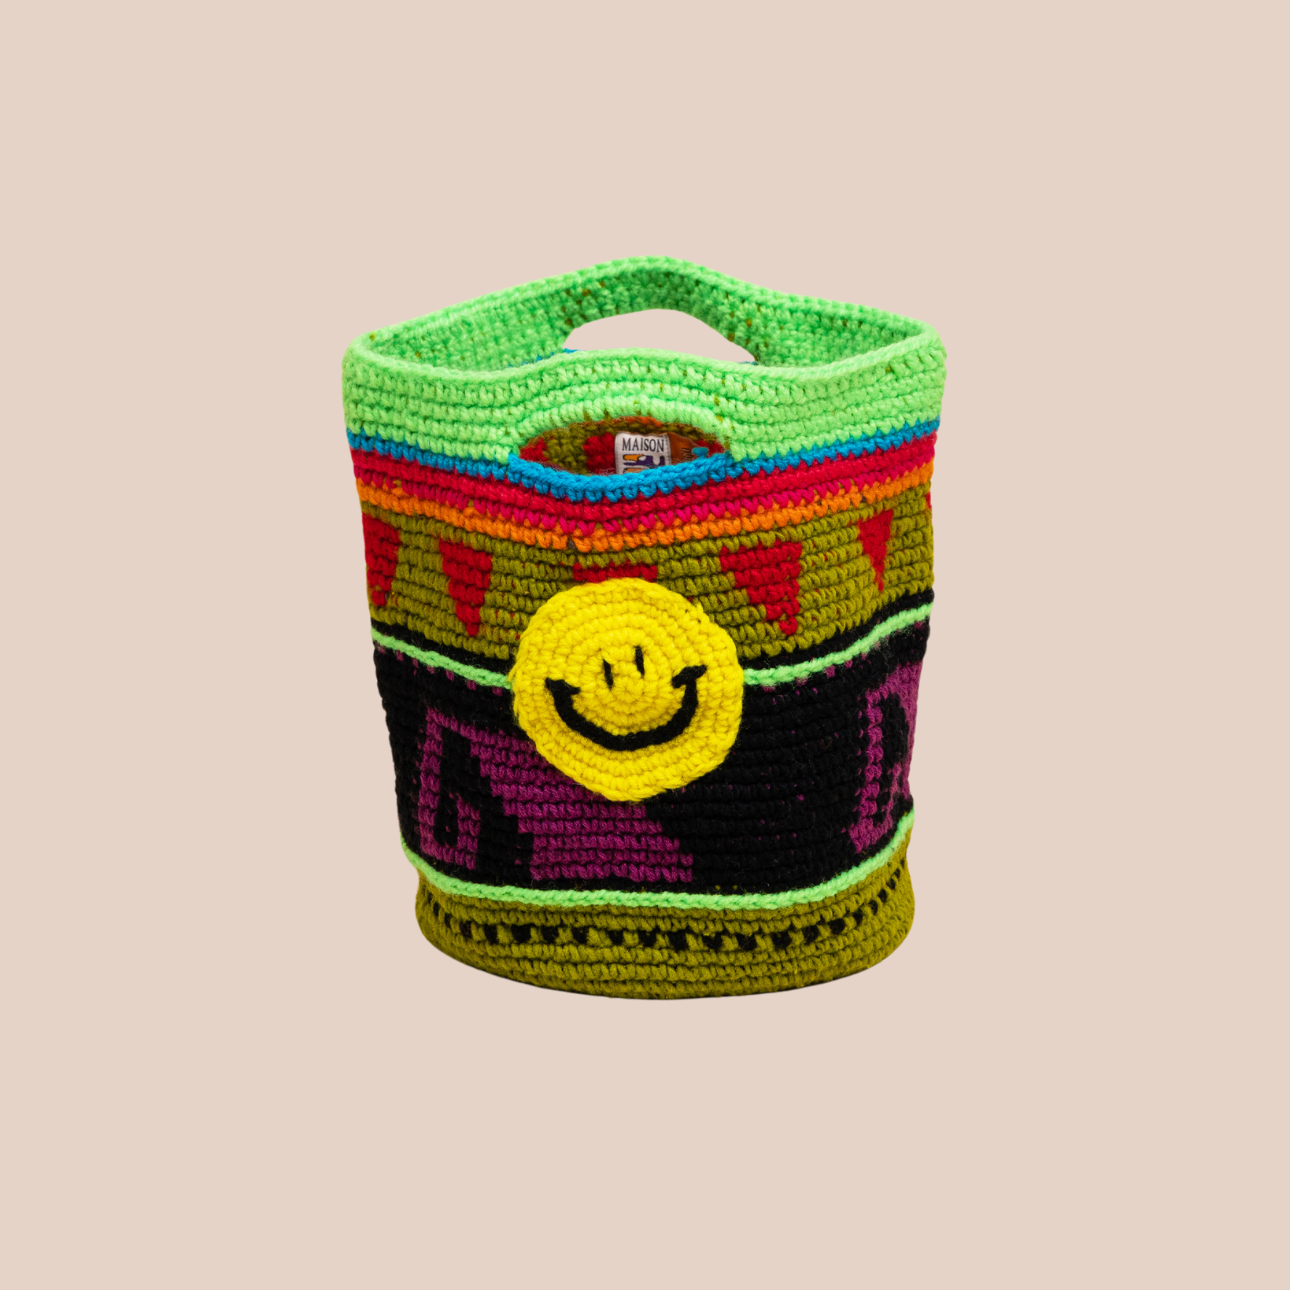  Image du sac motif smiley de Maison Badigo, sac en laine crocheté multicolore unique et tendance